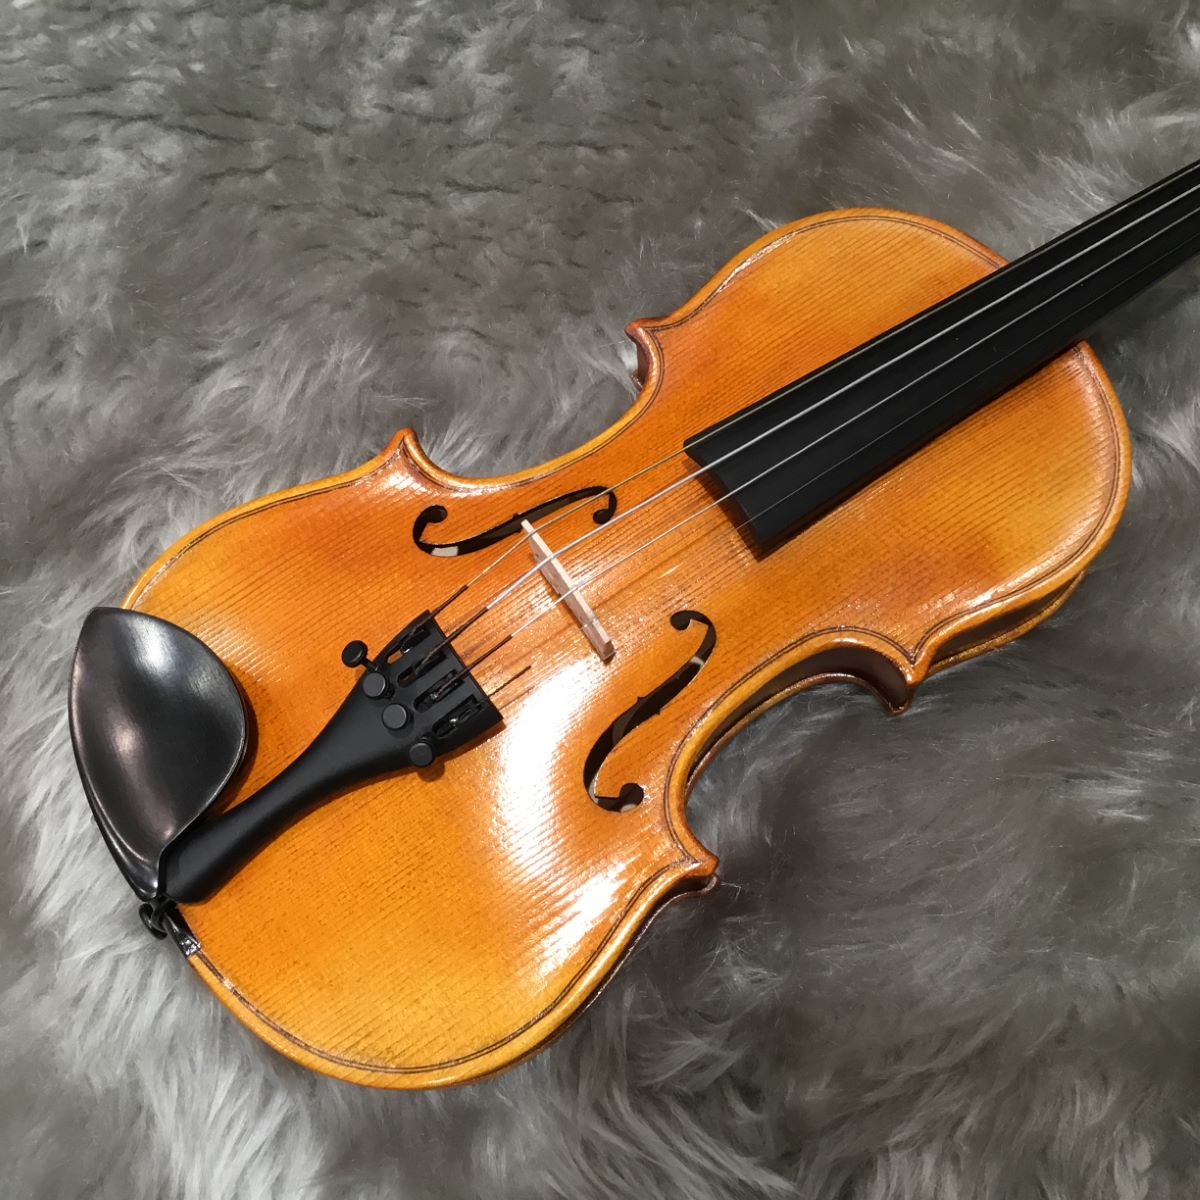 Nicolo Santi NSN60S バイオリン 初心者セット ニコロサンティ